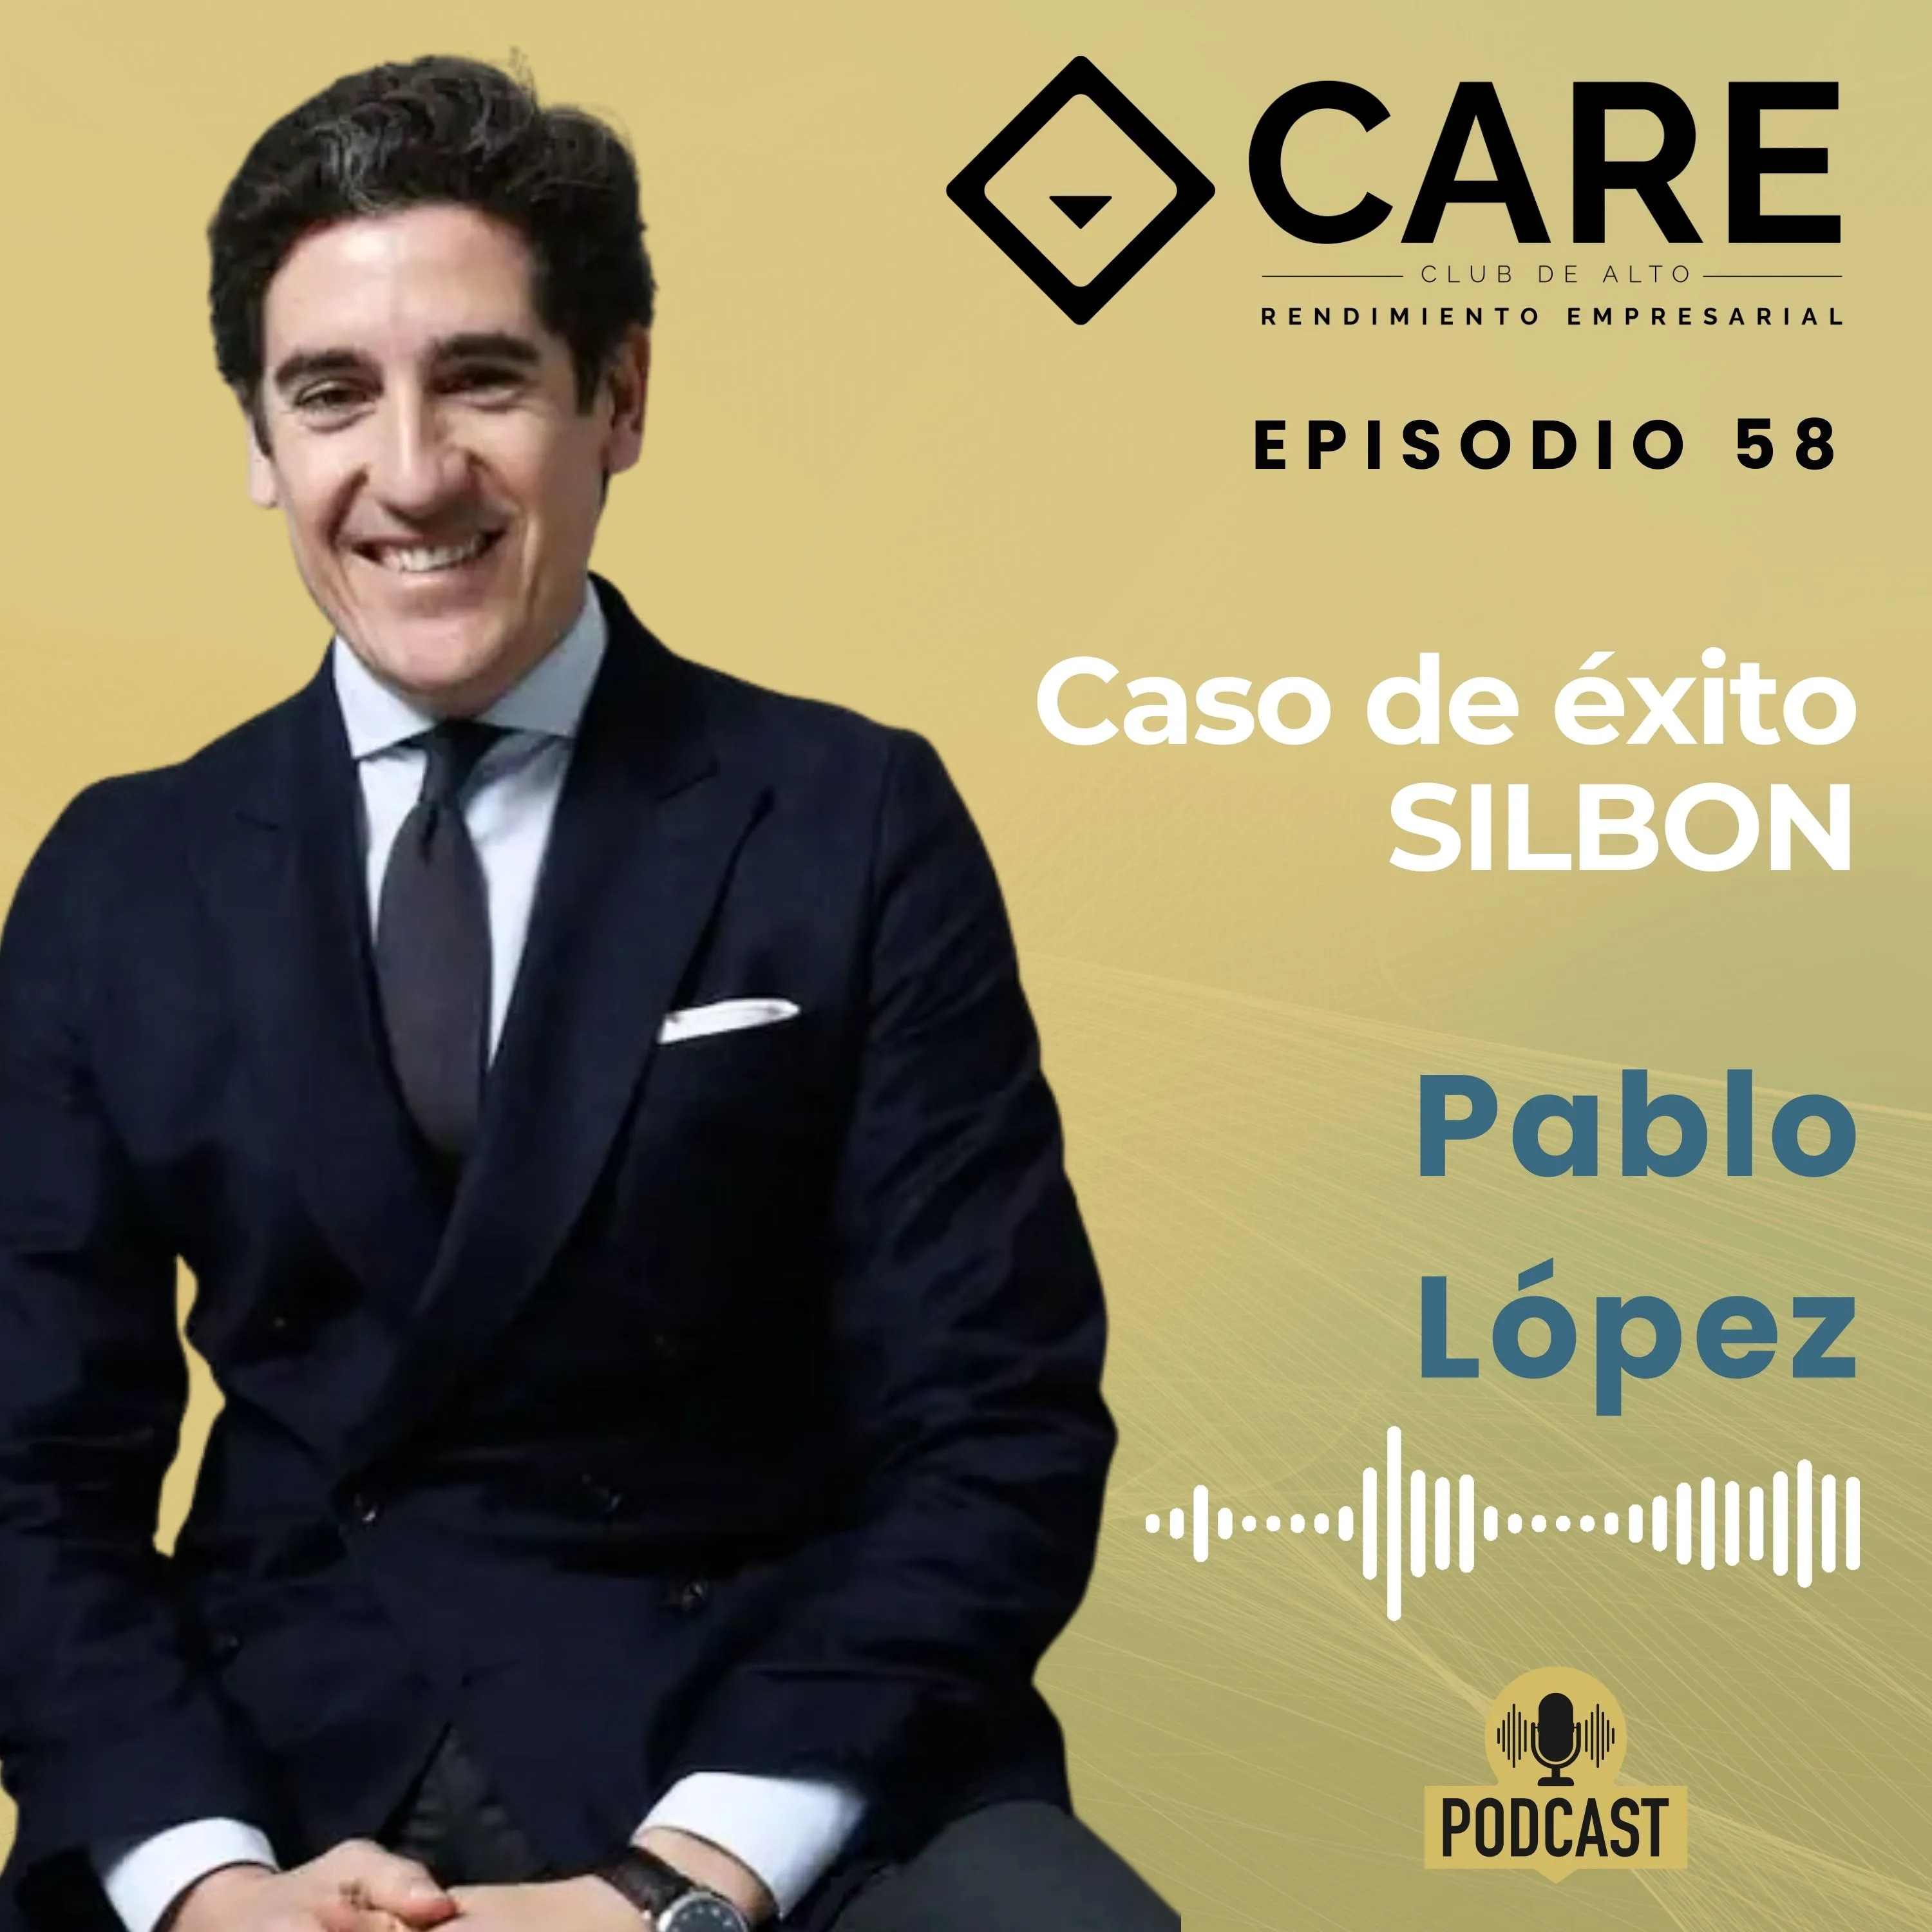 Episodio 58 – Caso de éxito SILBON, con Pablo López – Club de Alto Rendimiento Empresarial